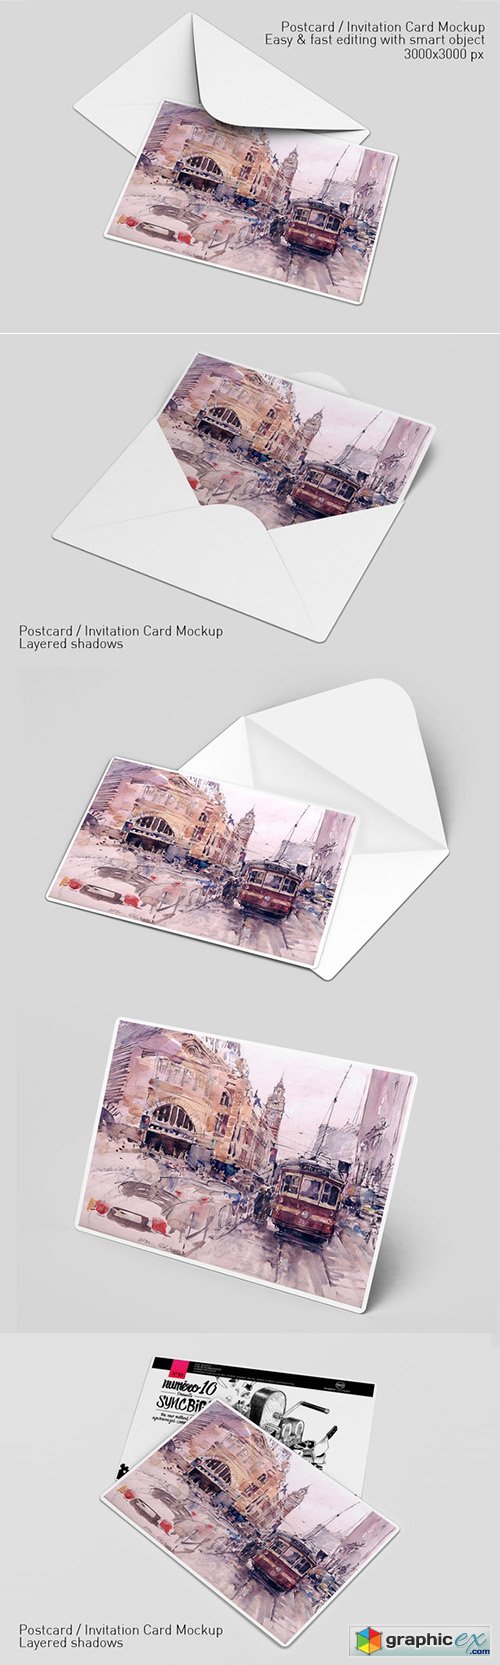  Postcard / Invitation Card Mockup